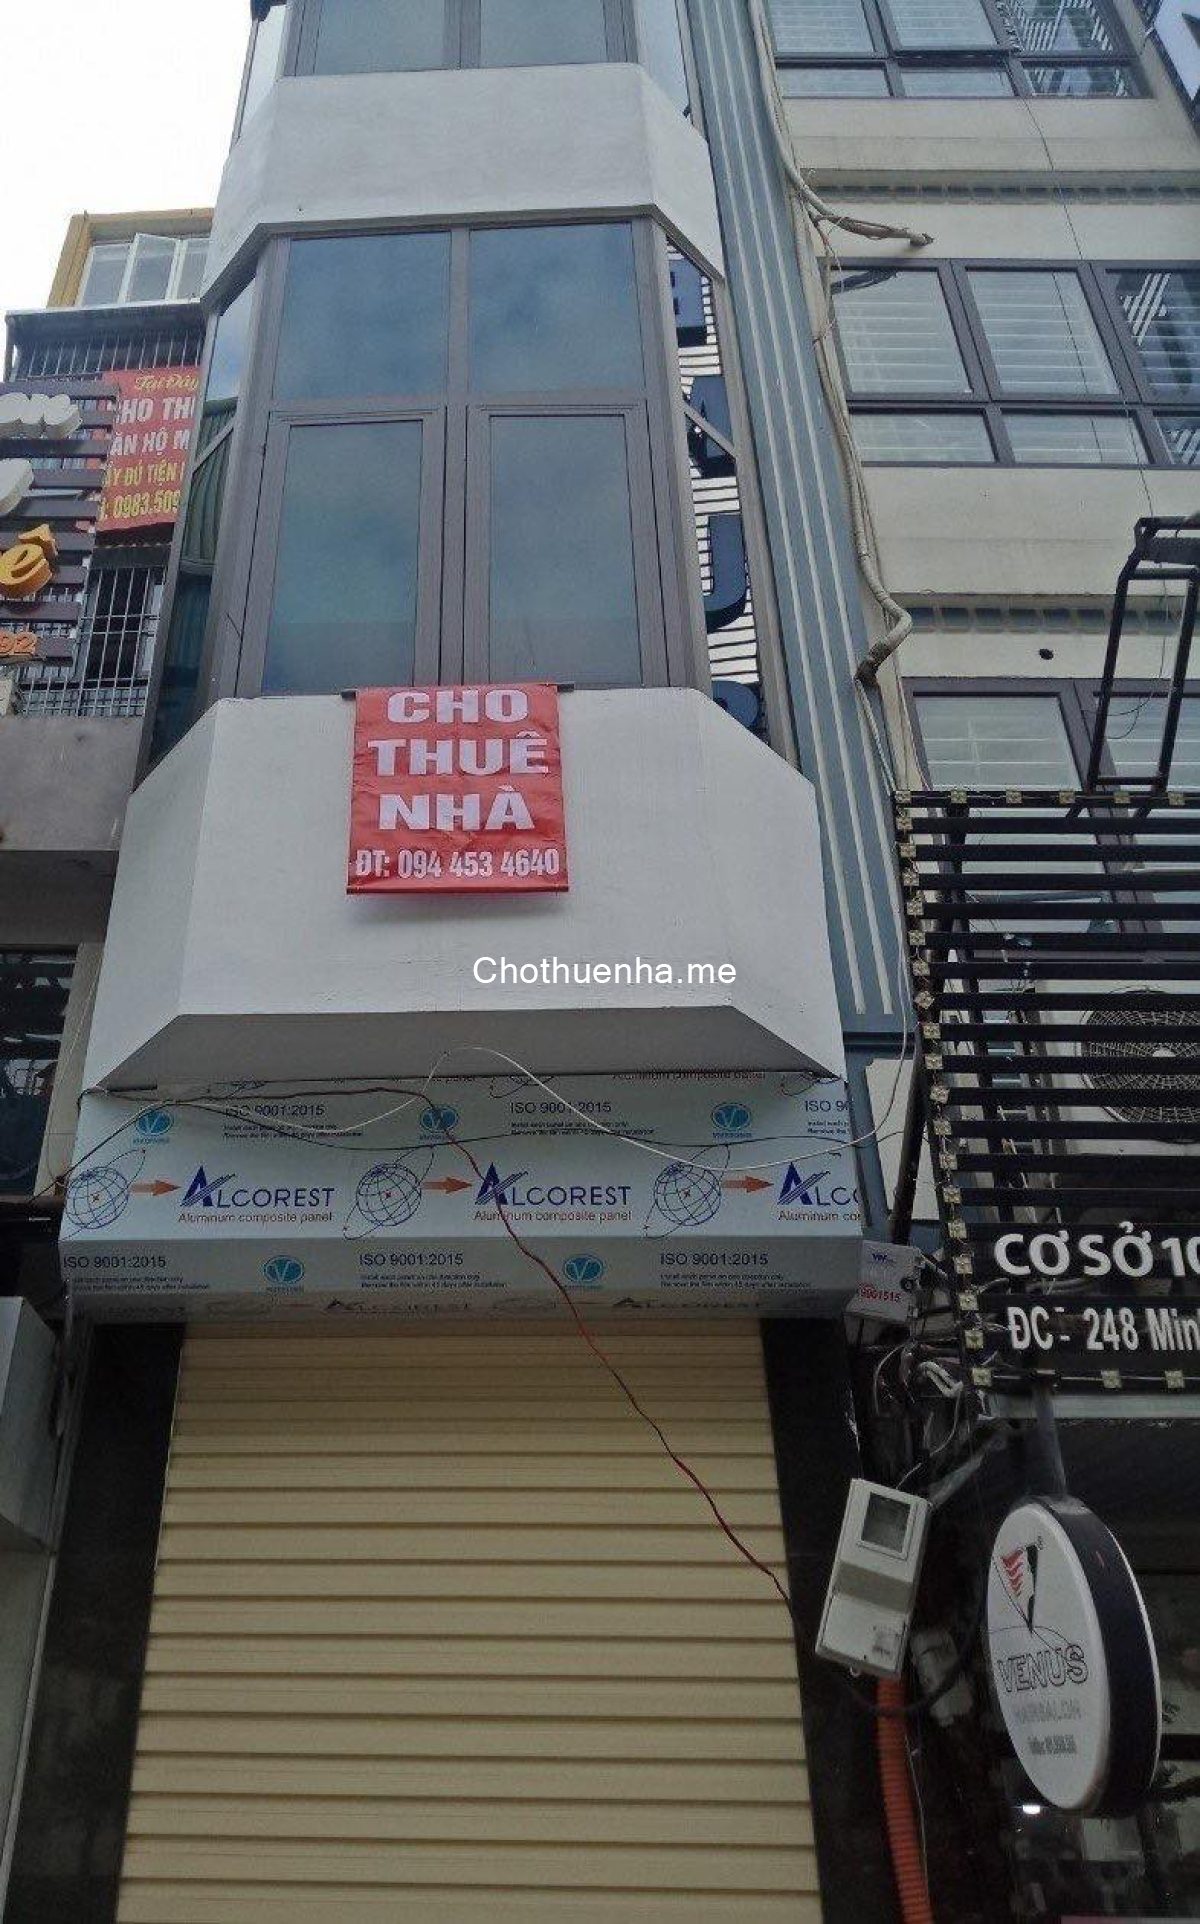 Chính chủ cho thuê nhà mặt phố 4 tầng mới sửa phù hợp kinh doanh Minh Khai, Hai Bà Trưng 11tr/tháng